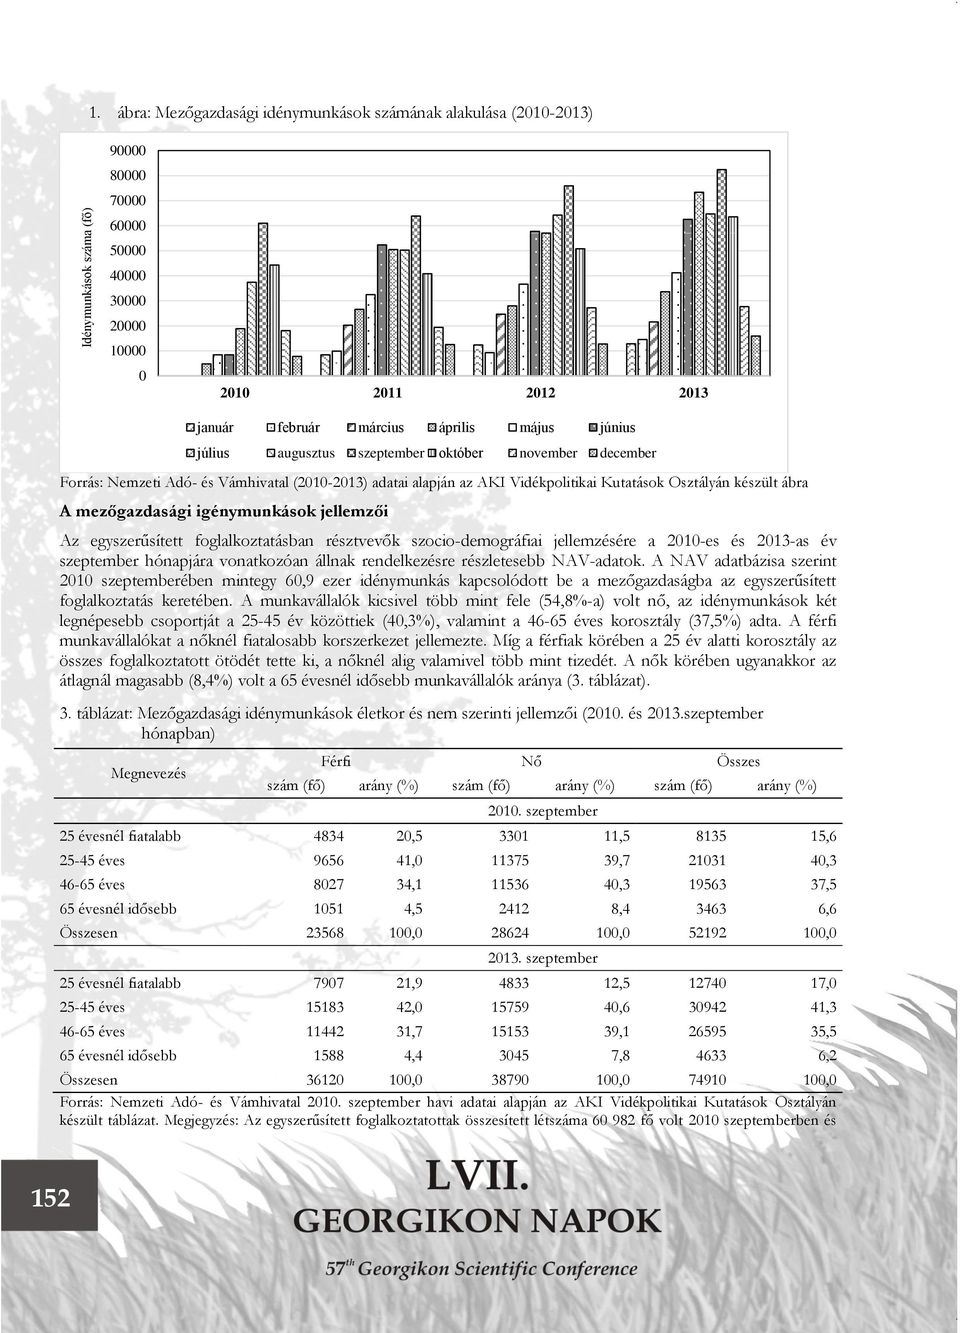 augusztus szeptember október november december Forrás: Nemzeti Adó- és Vámhivatal (2010-2013) adatai alapján az AKI Vidékpolitikai Kutatások Osztályán készült ábra A mezőgazdasági igénymunkások